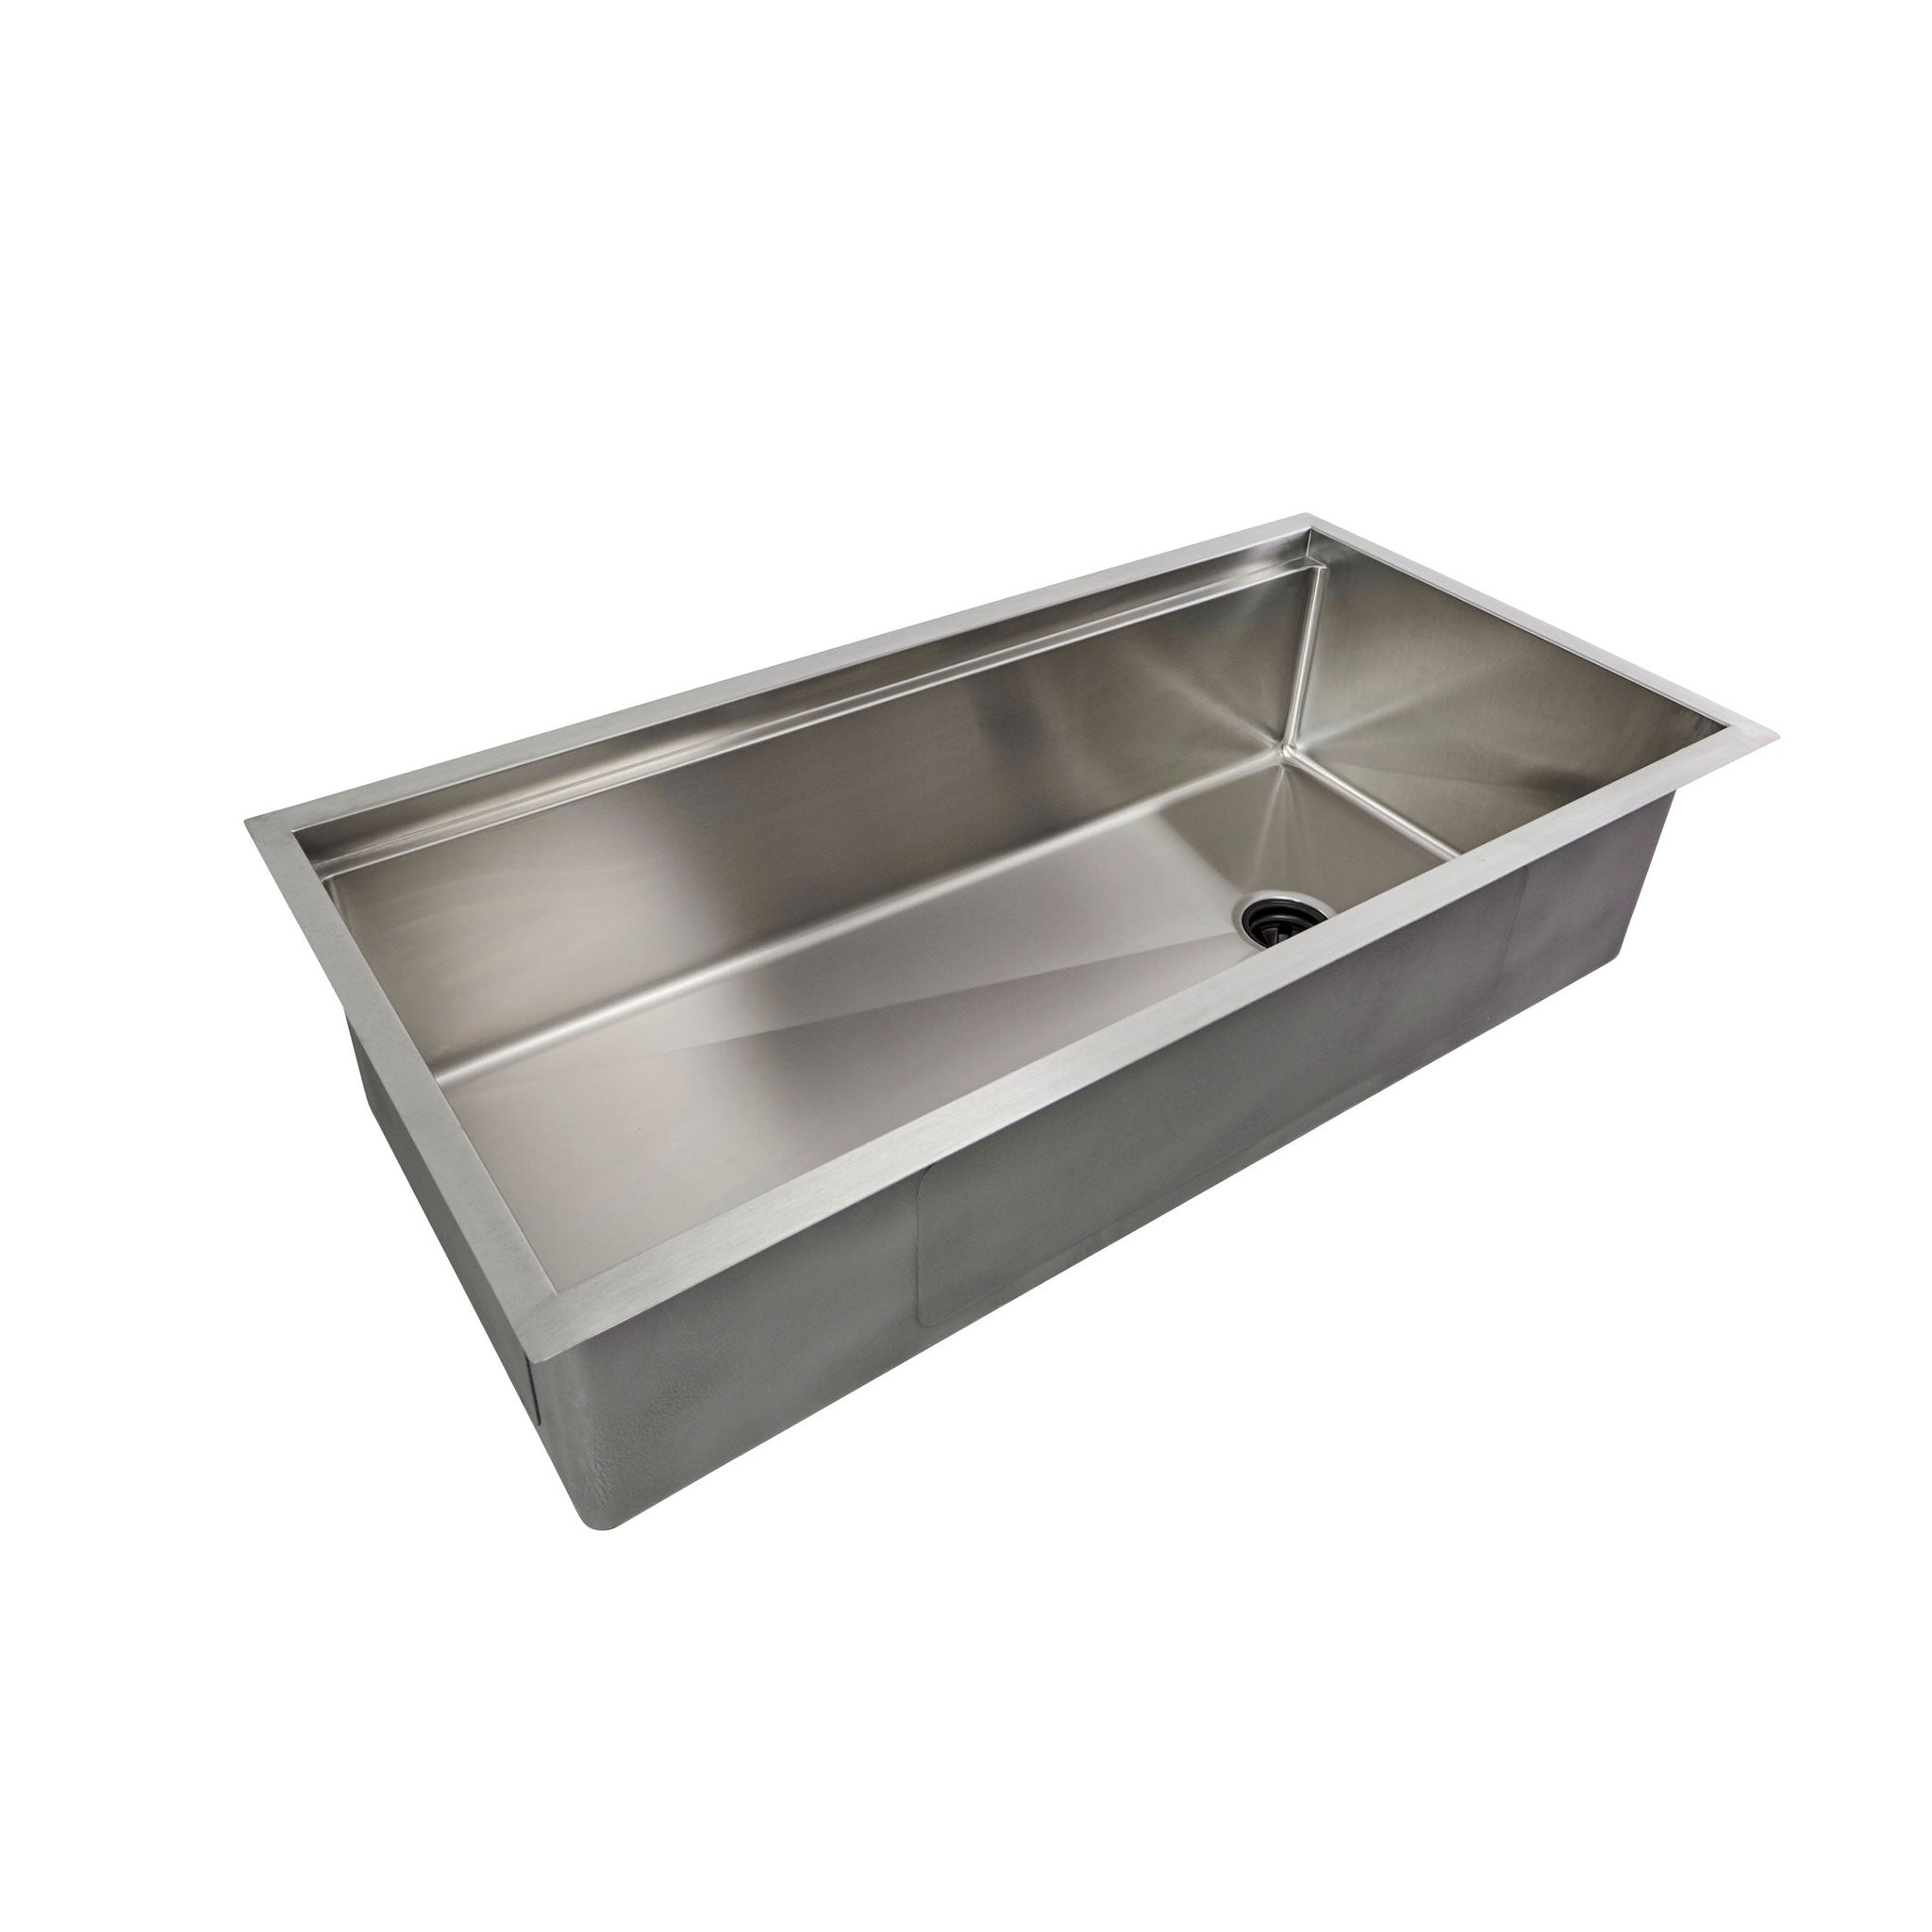 40 inch single bowl kitchen sink. Stainless steel workstation kitchen sink with offset undermount drain.